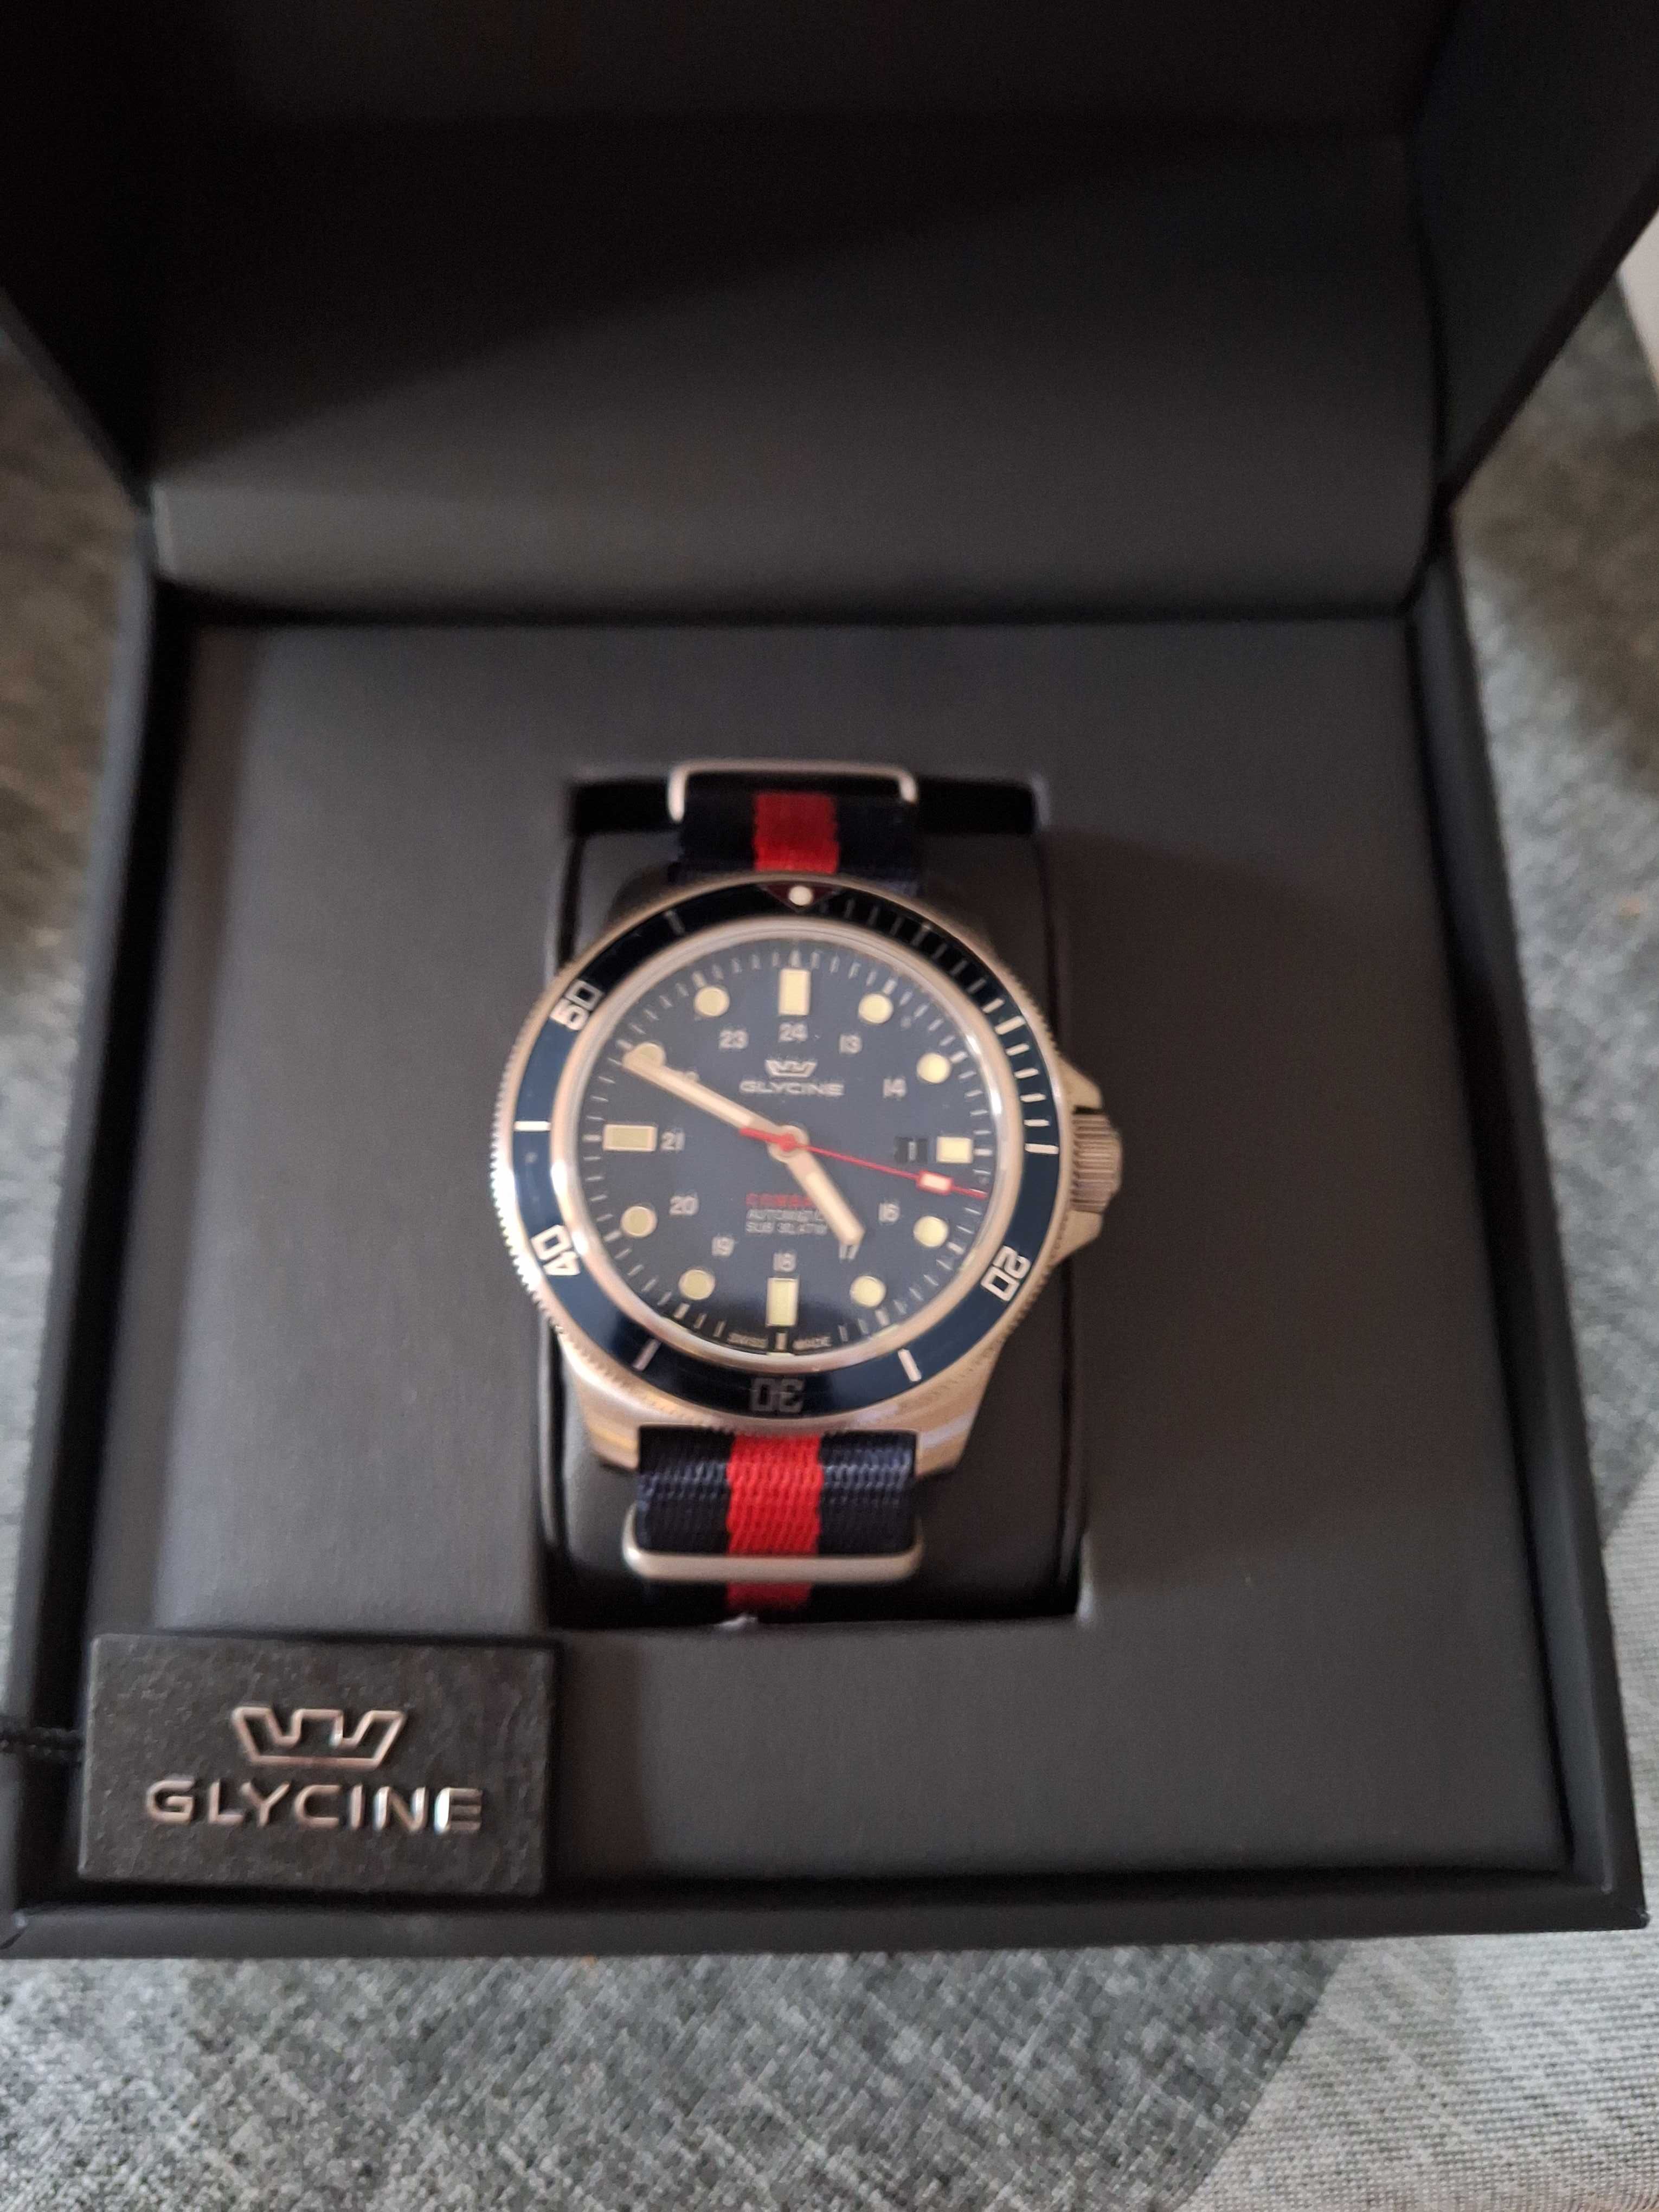 Zegarek męski automatyczny Glycine GL 0257 full set nowy tanio